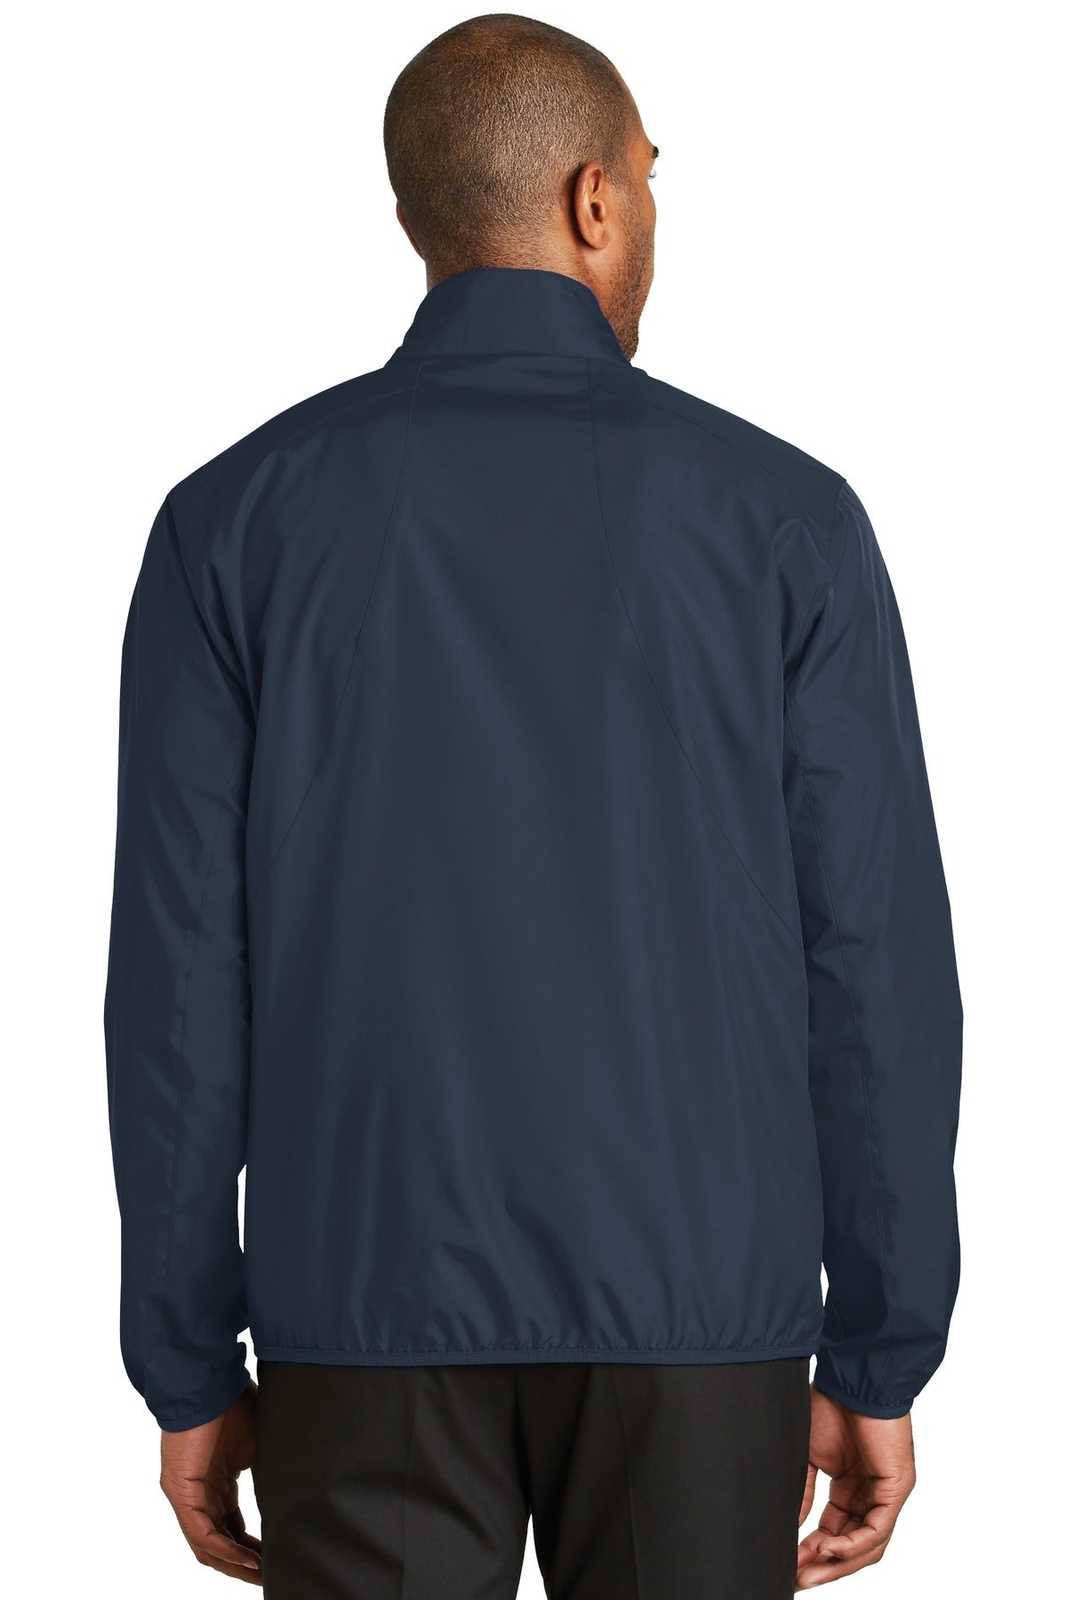 Port Authority J344 Zephyr Full-Zip Jacket - Dress Blue Navy - HIT a Double - 1